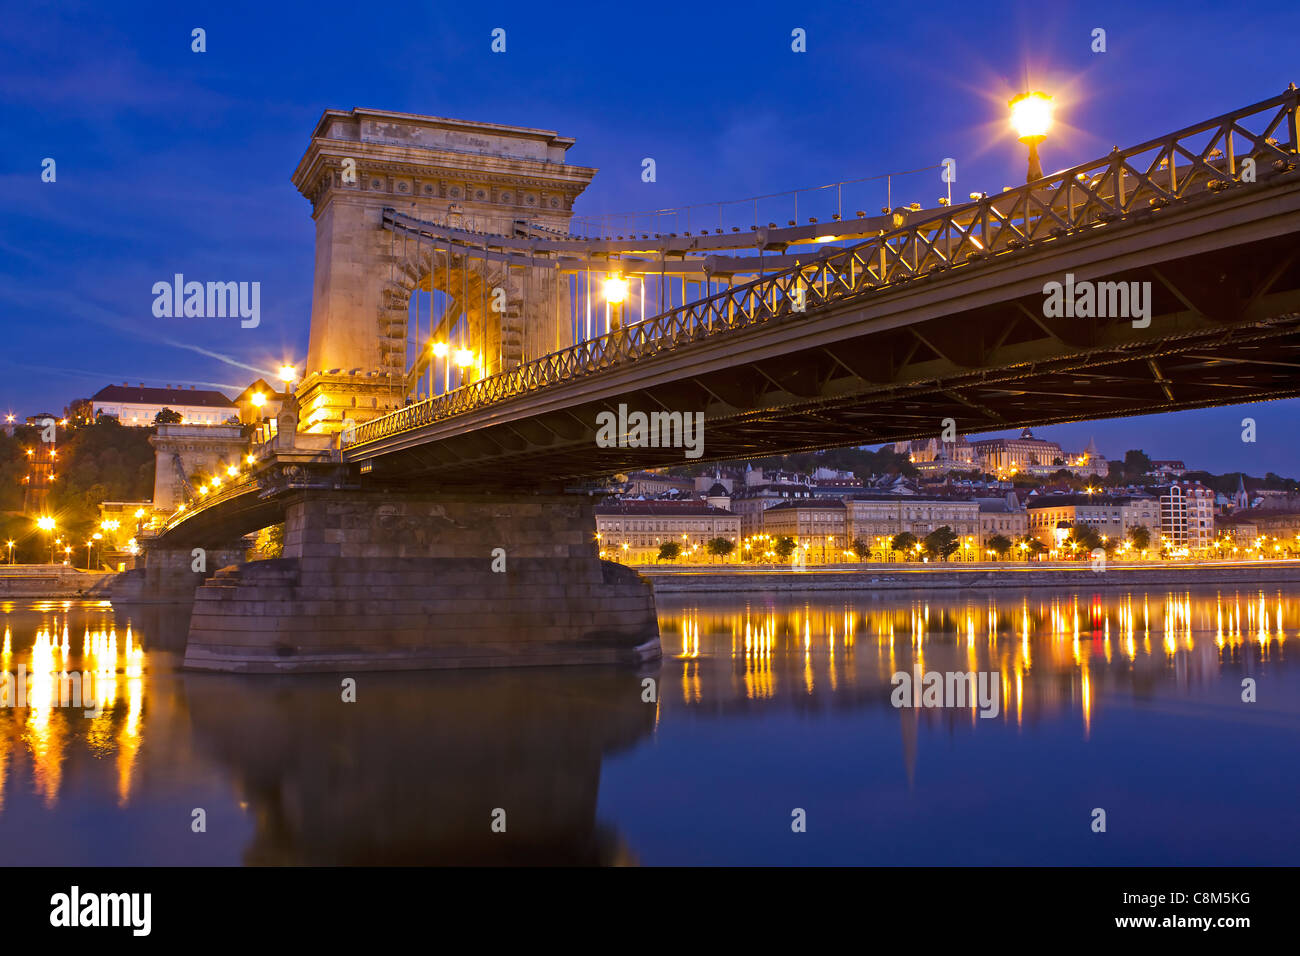 Lánchíd oder die Kettenbrücke in Budapest Ungarn über die Donau im frühen Morgenlicht Stockfoto